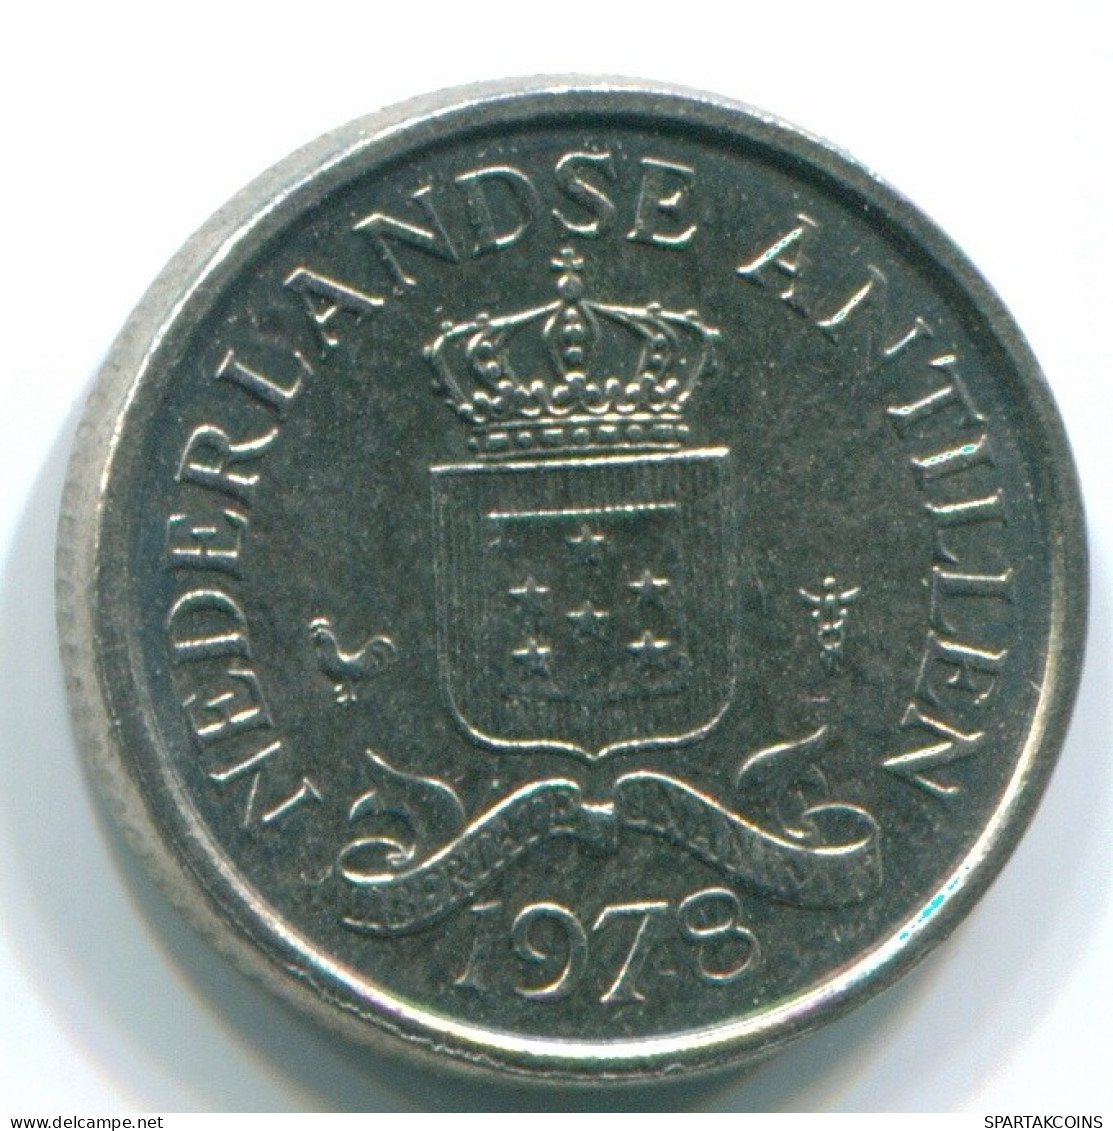 10 CENTS 1978 NETHERLANDS ANTILLES Nickel Colonial Coin #S13565.U.A - Niederländische Antillen